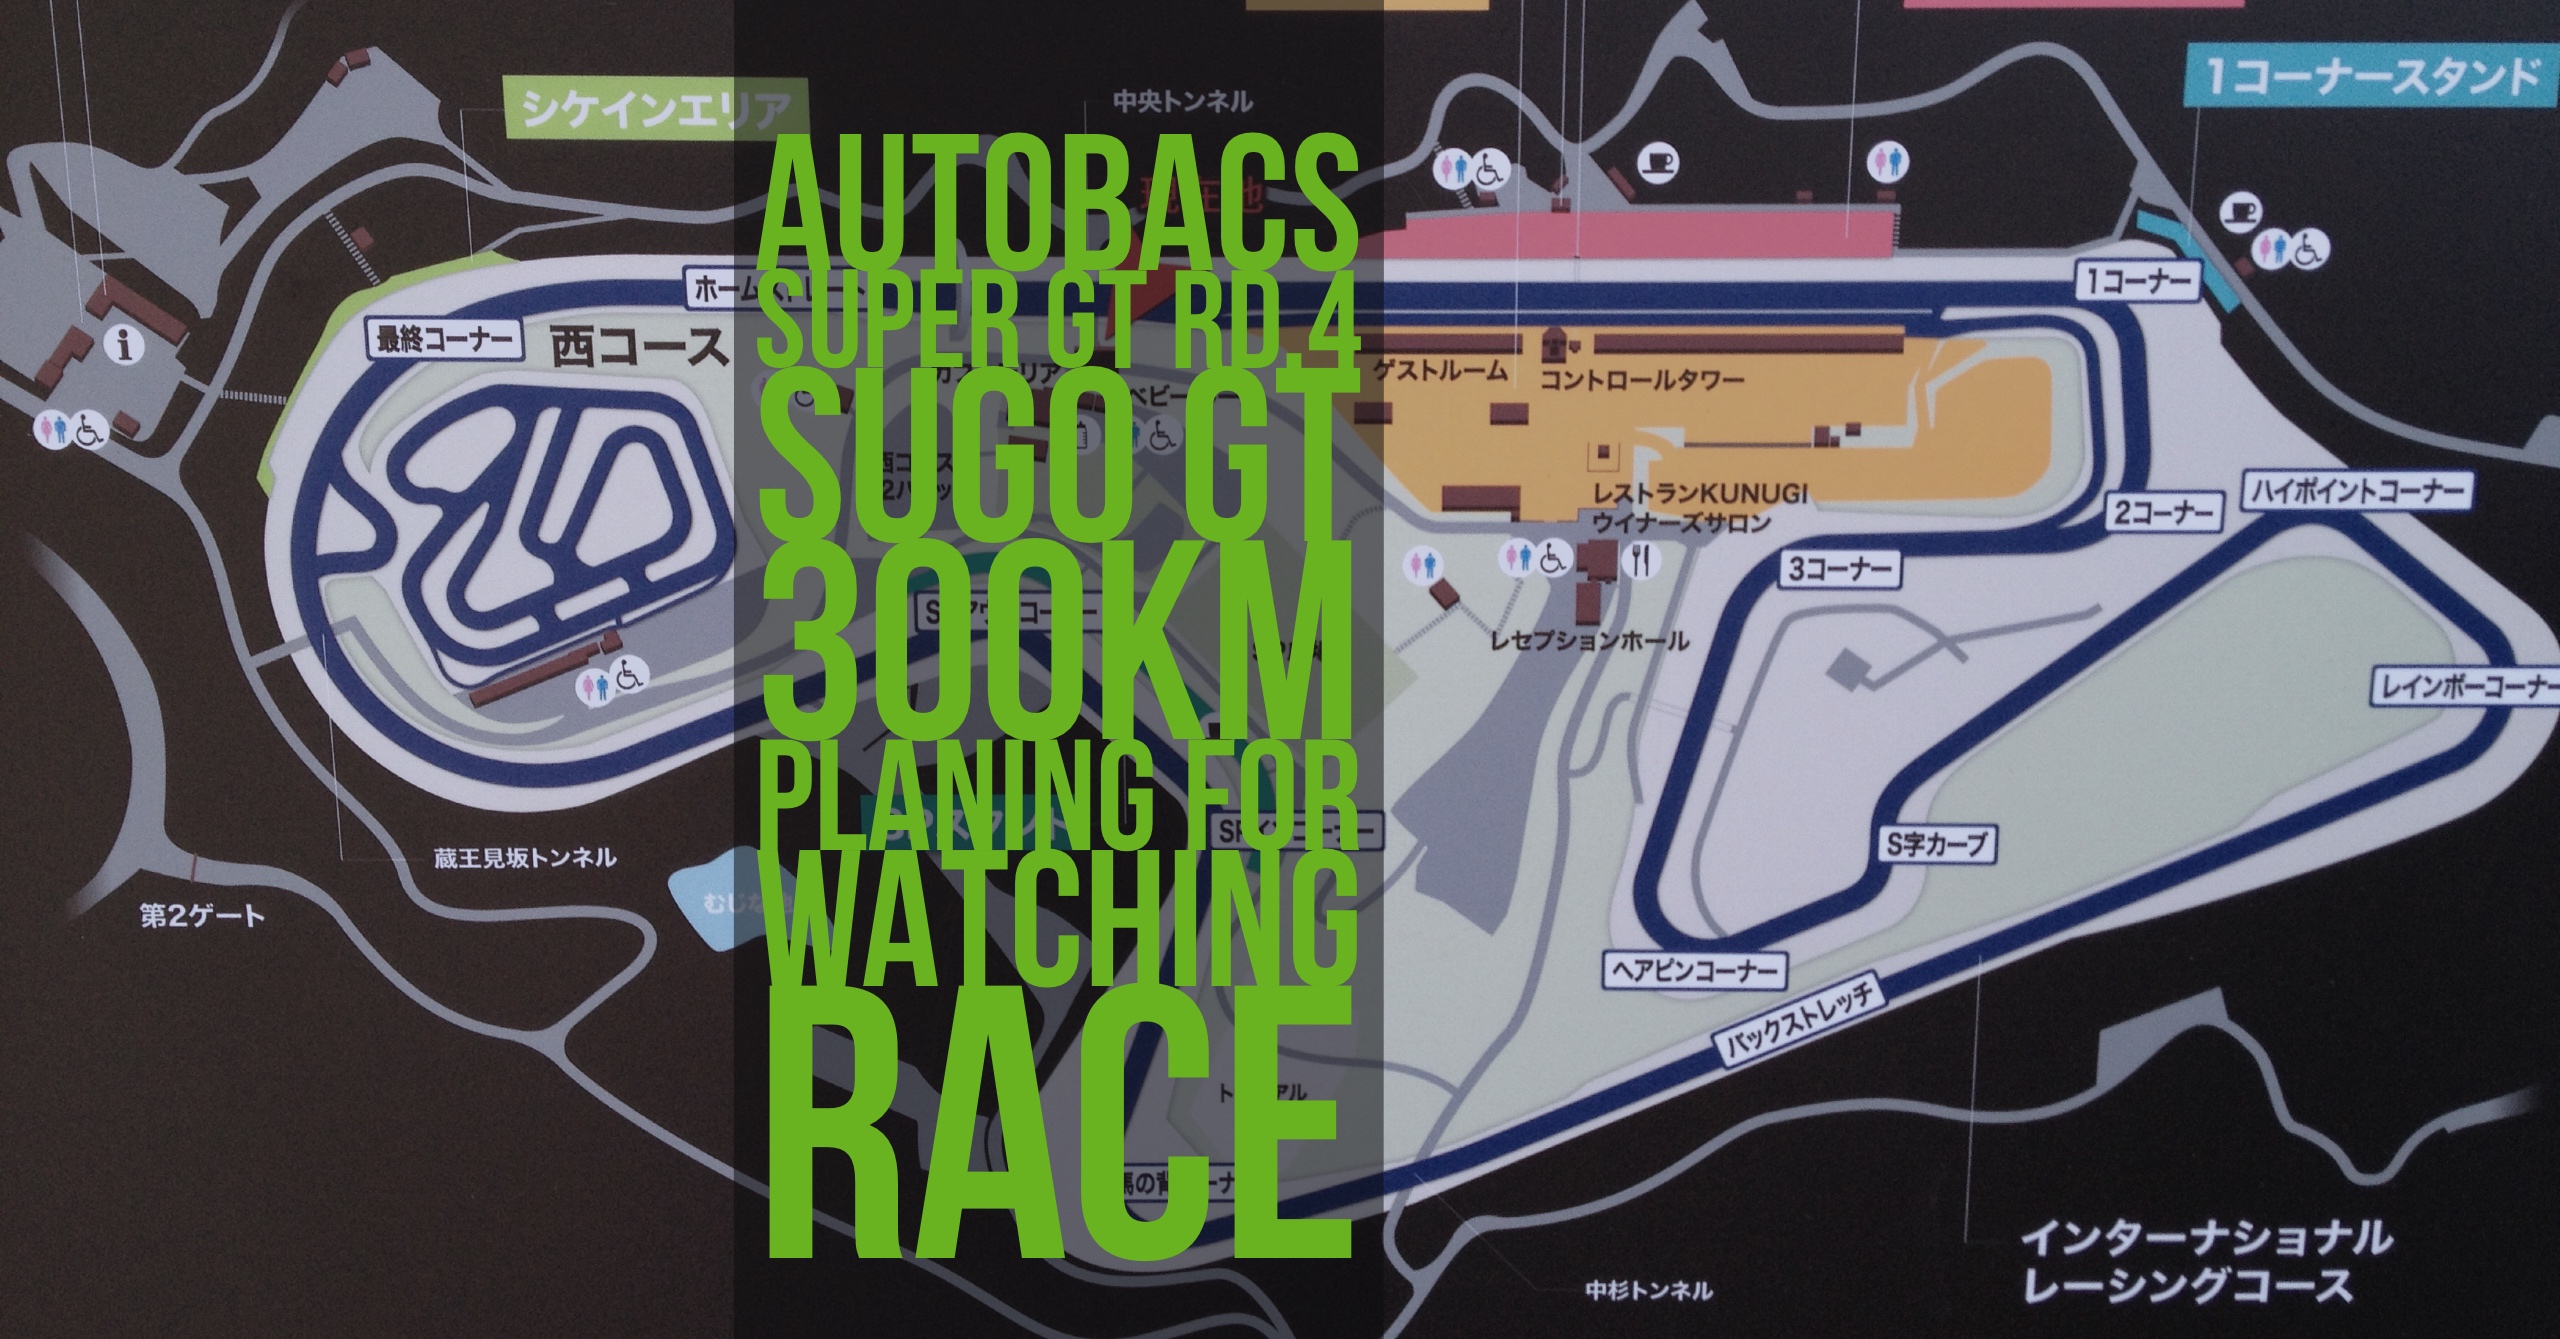 遠征】SUGOでの観戦プランを考える(2017 AUTOBACS SUPER GT Round.4 SUGO GT 300km RACE) -  43RacePhotos